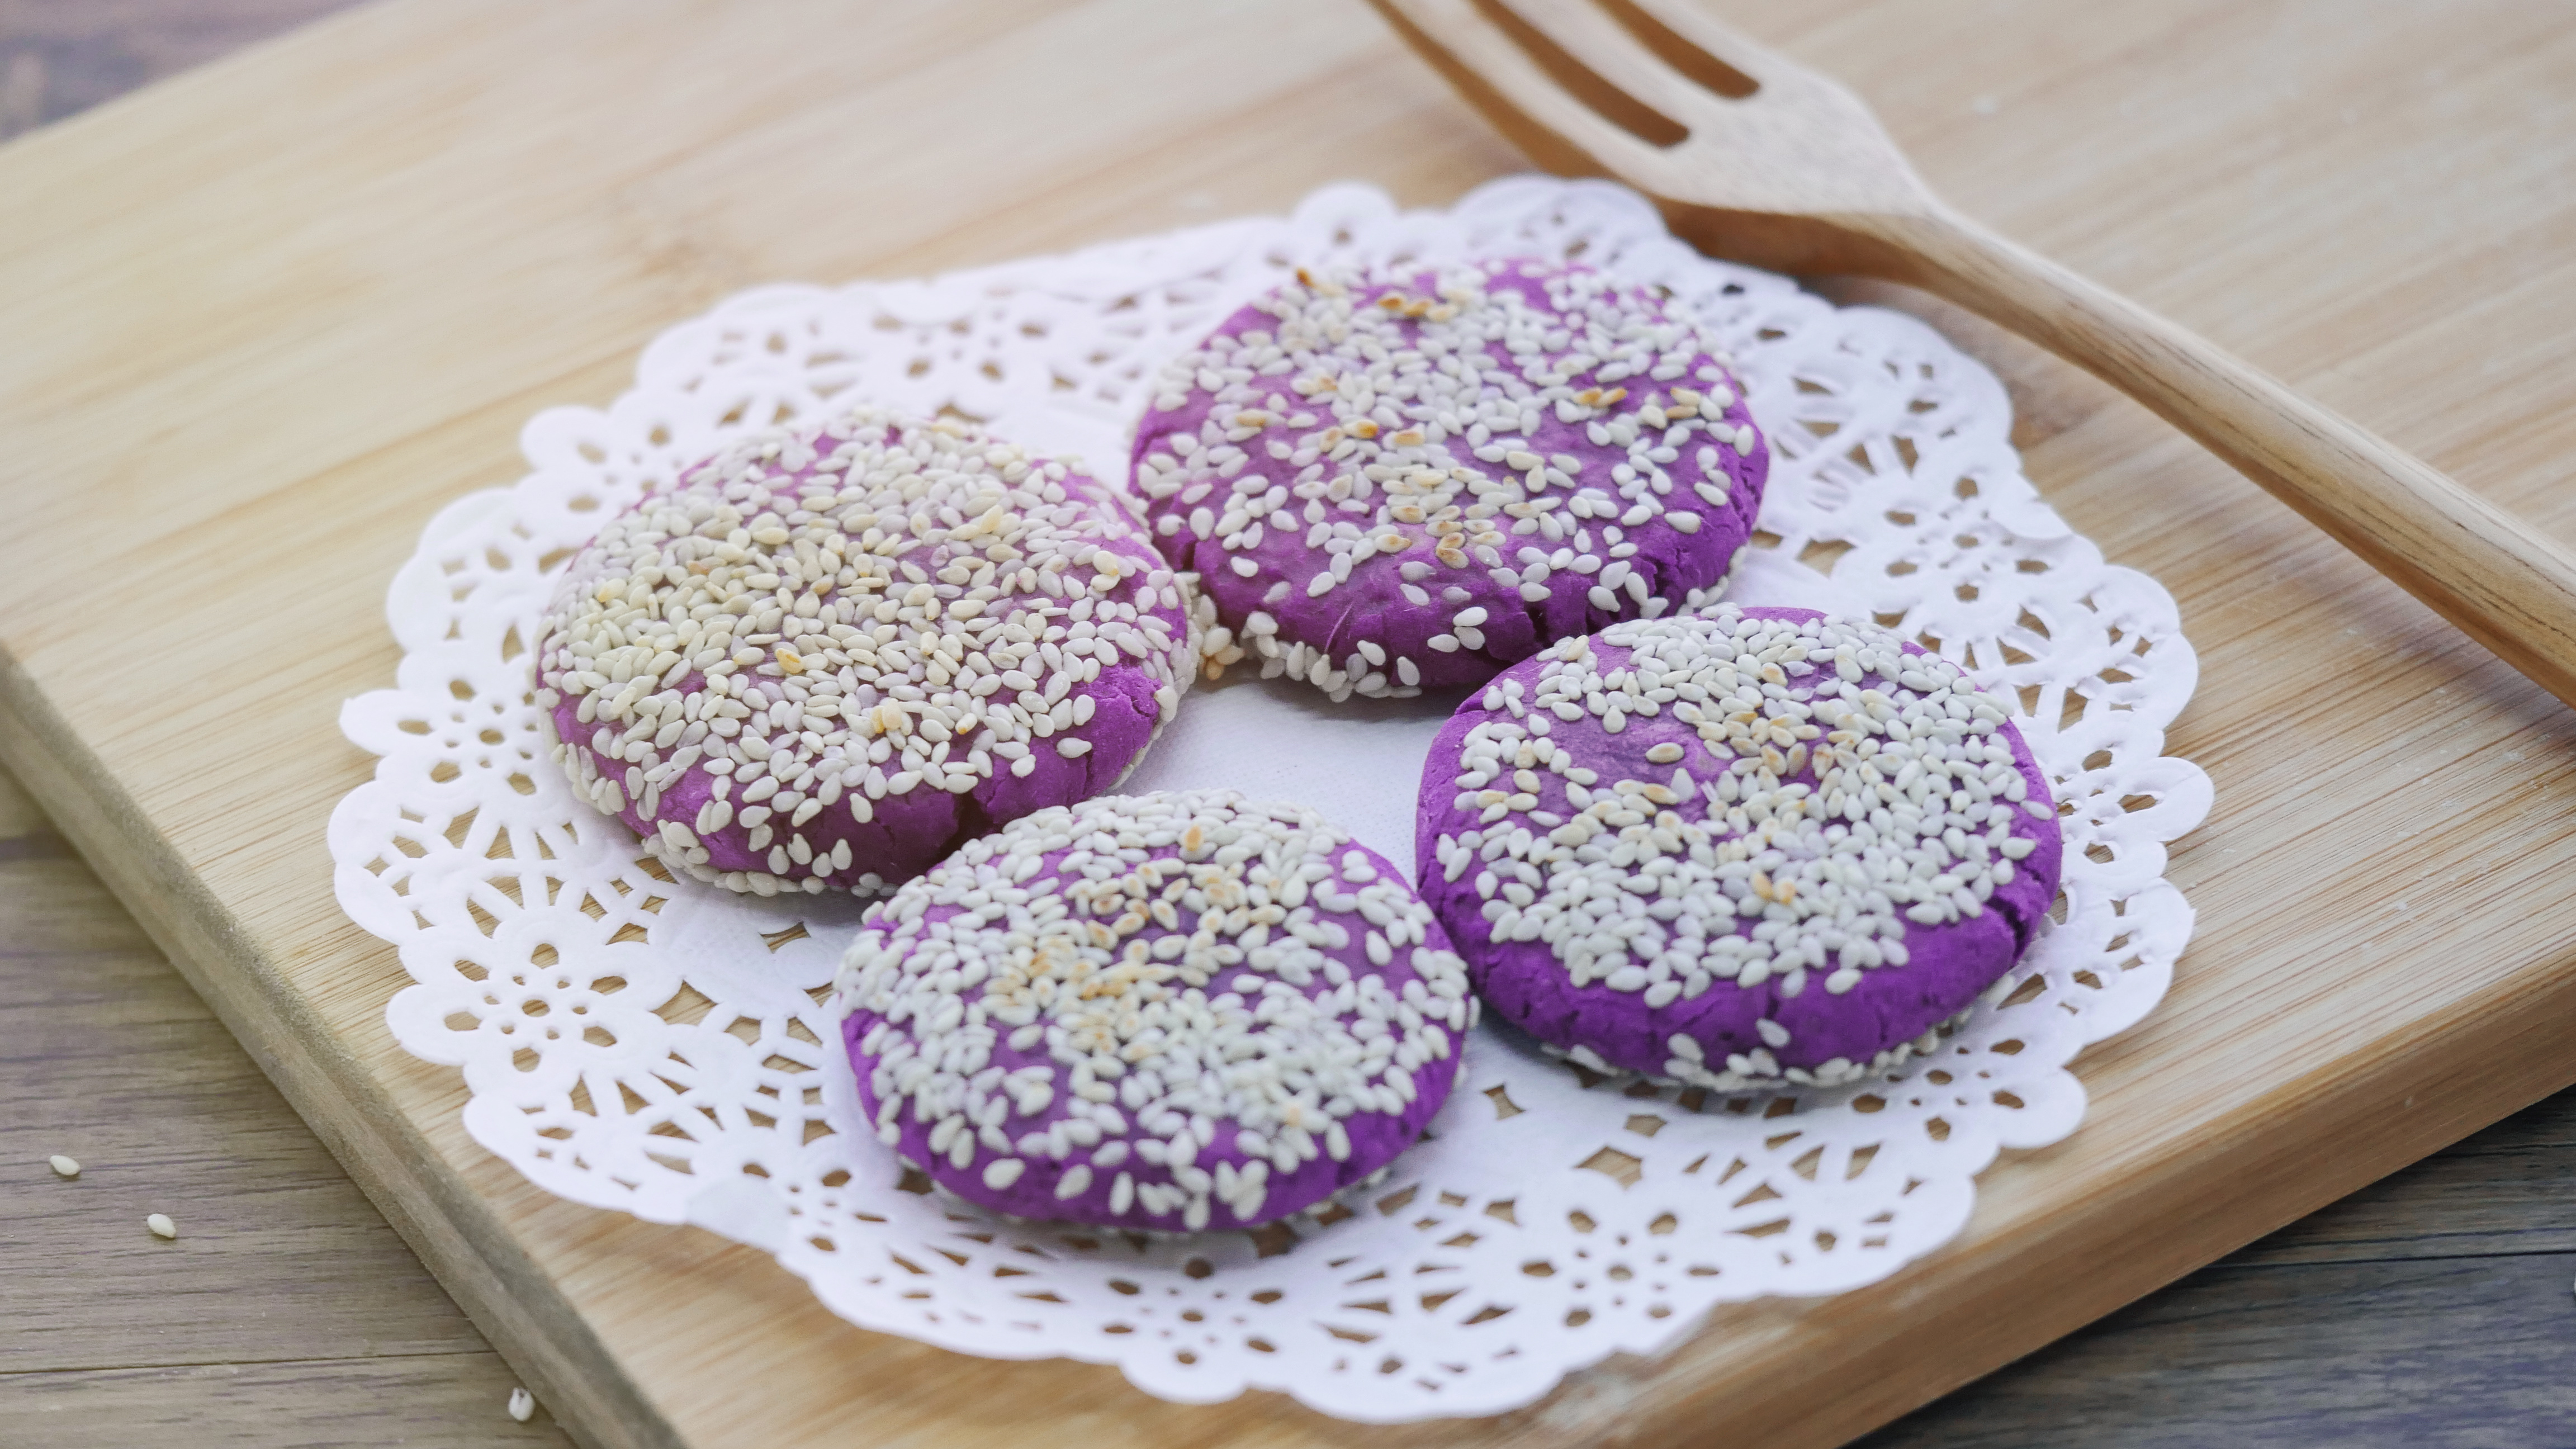 【图文食谱】糯叽叽的拉丝紫薯饼!90后老阿姨养生小吃!